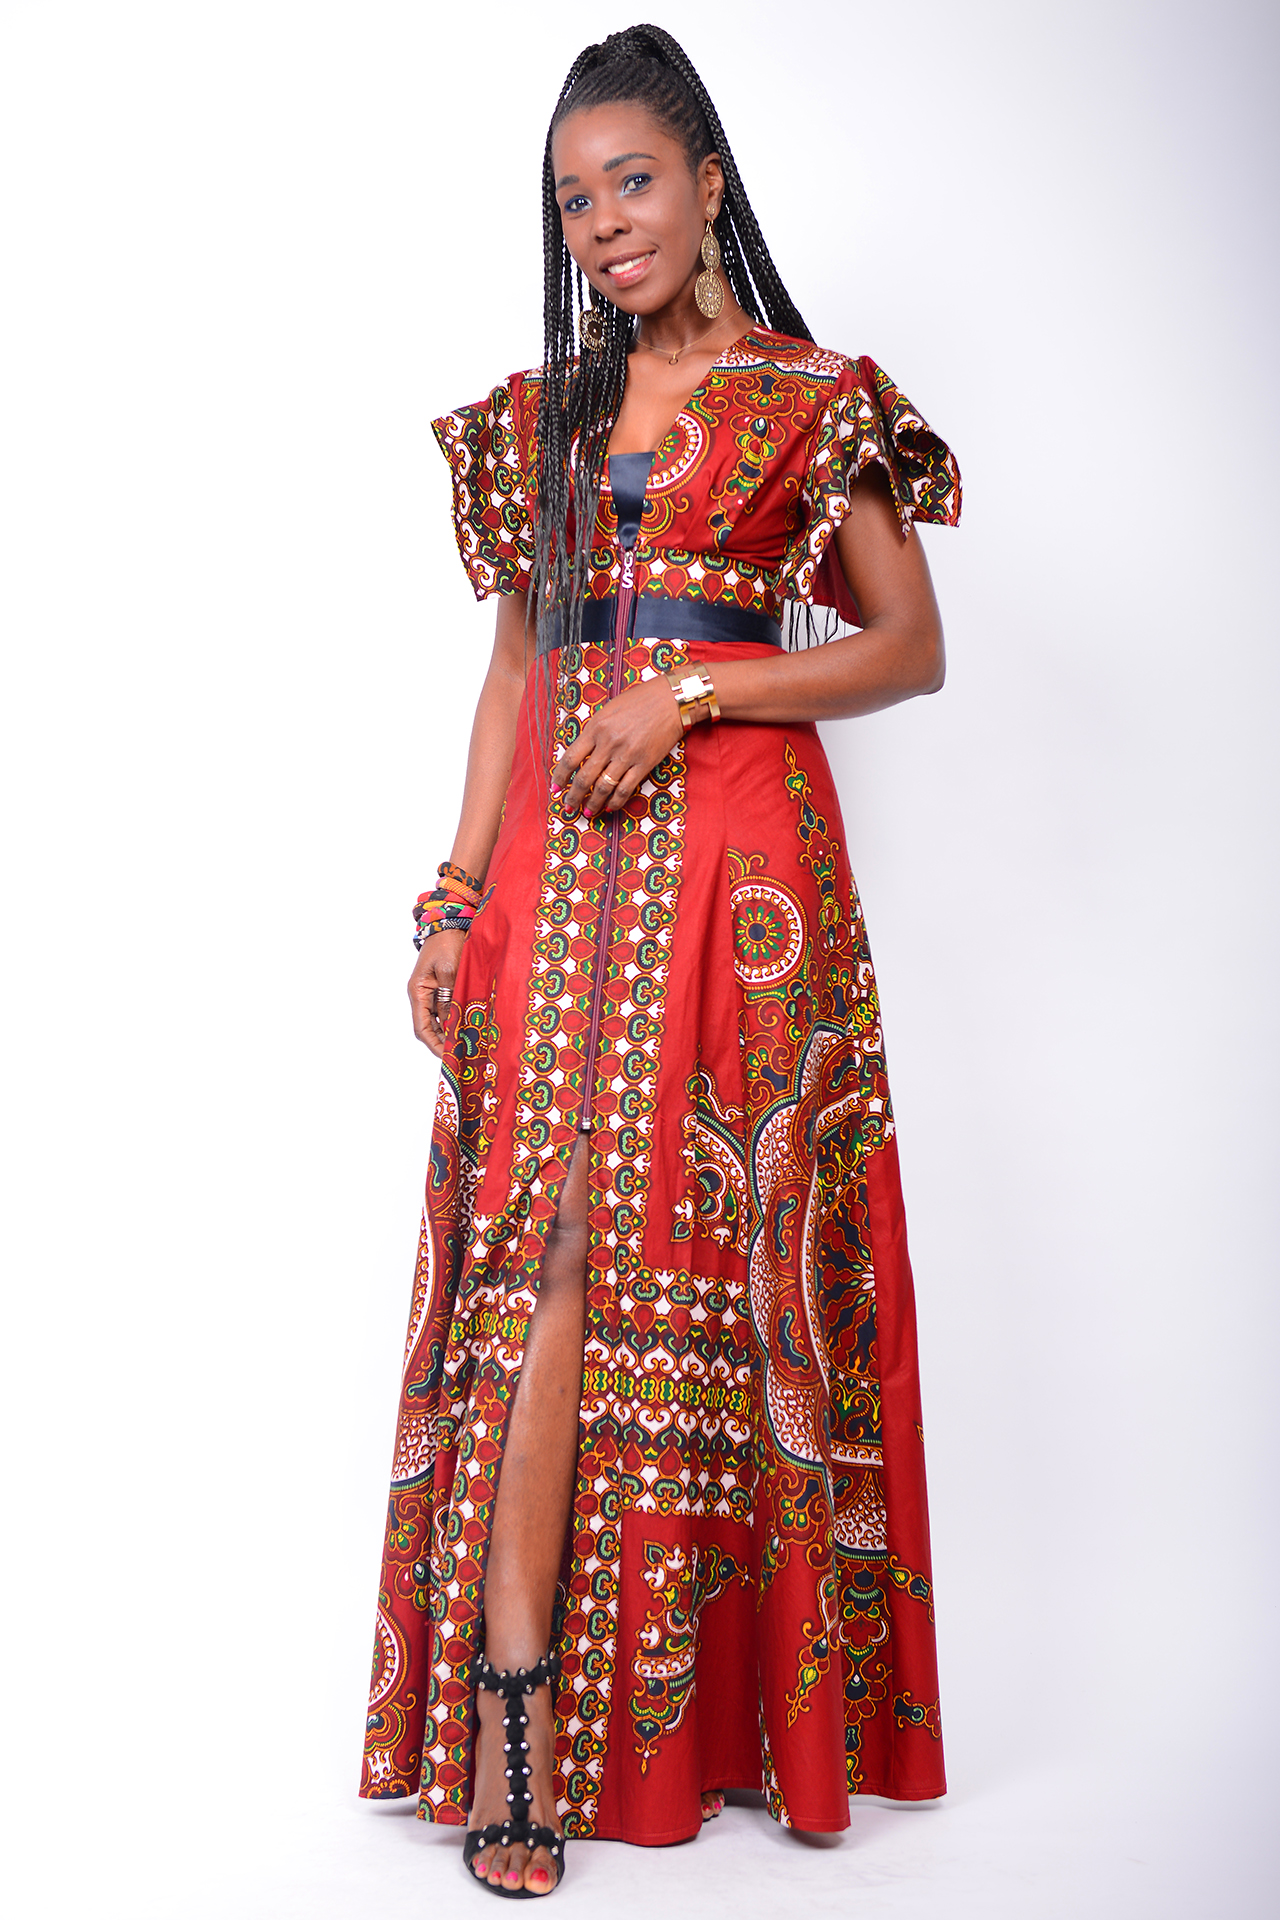  Mai 2020 - Afrikanische Mode - Modell Isadora & Maureen neu in der Kollektion von Euge-W